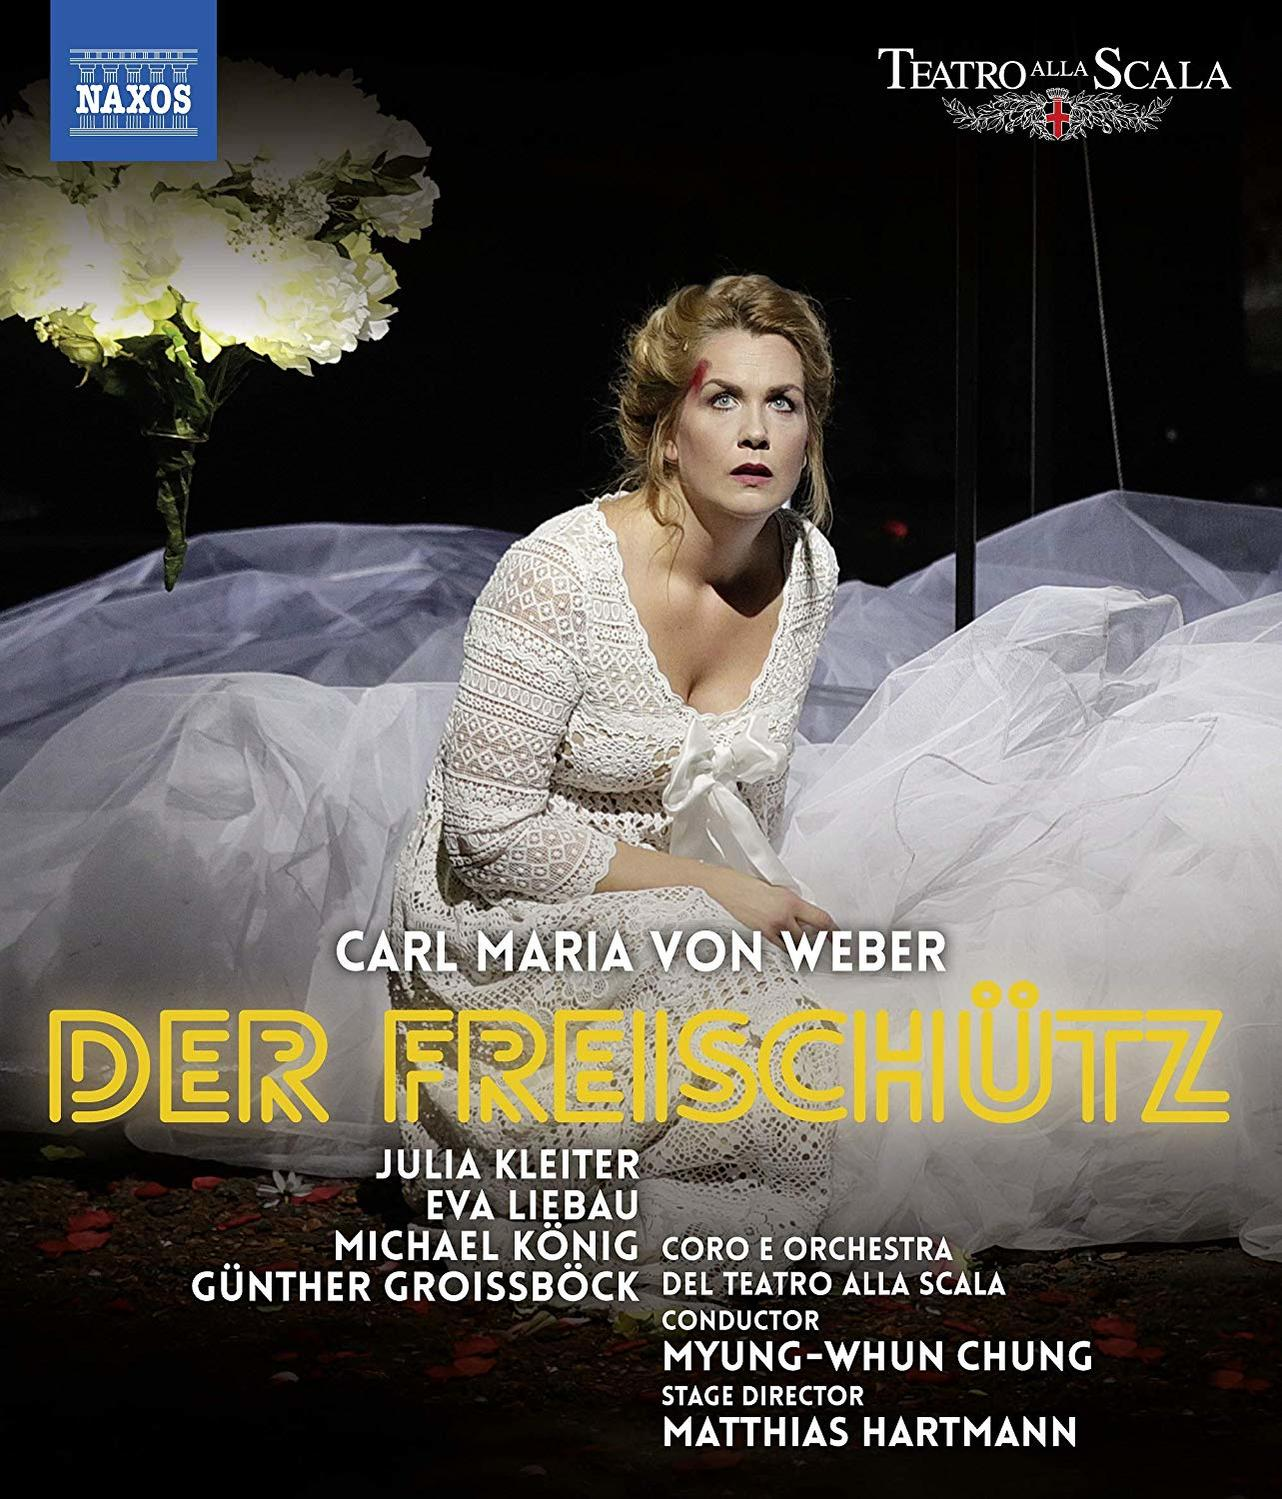 Weber: Alla Scala, Freischütz Günther (Blu-ray) Del Carl König, E Kleiter Liebau, Julia Michael Coro Groissboeck, Maria Der Teatro Orchestra Von - - Eva